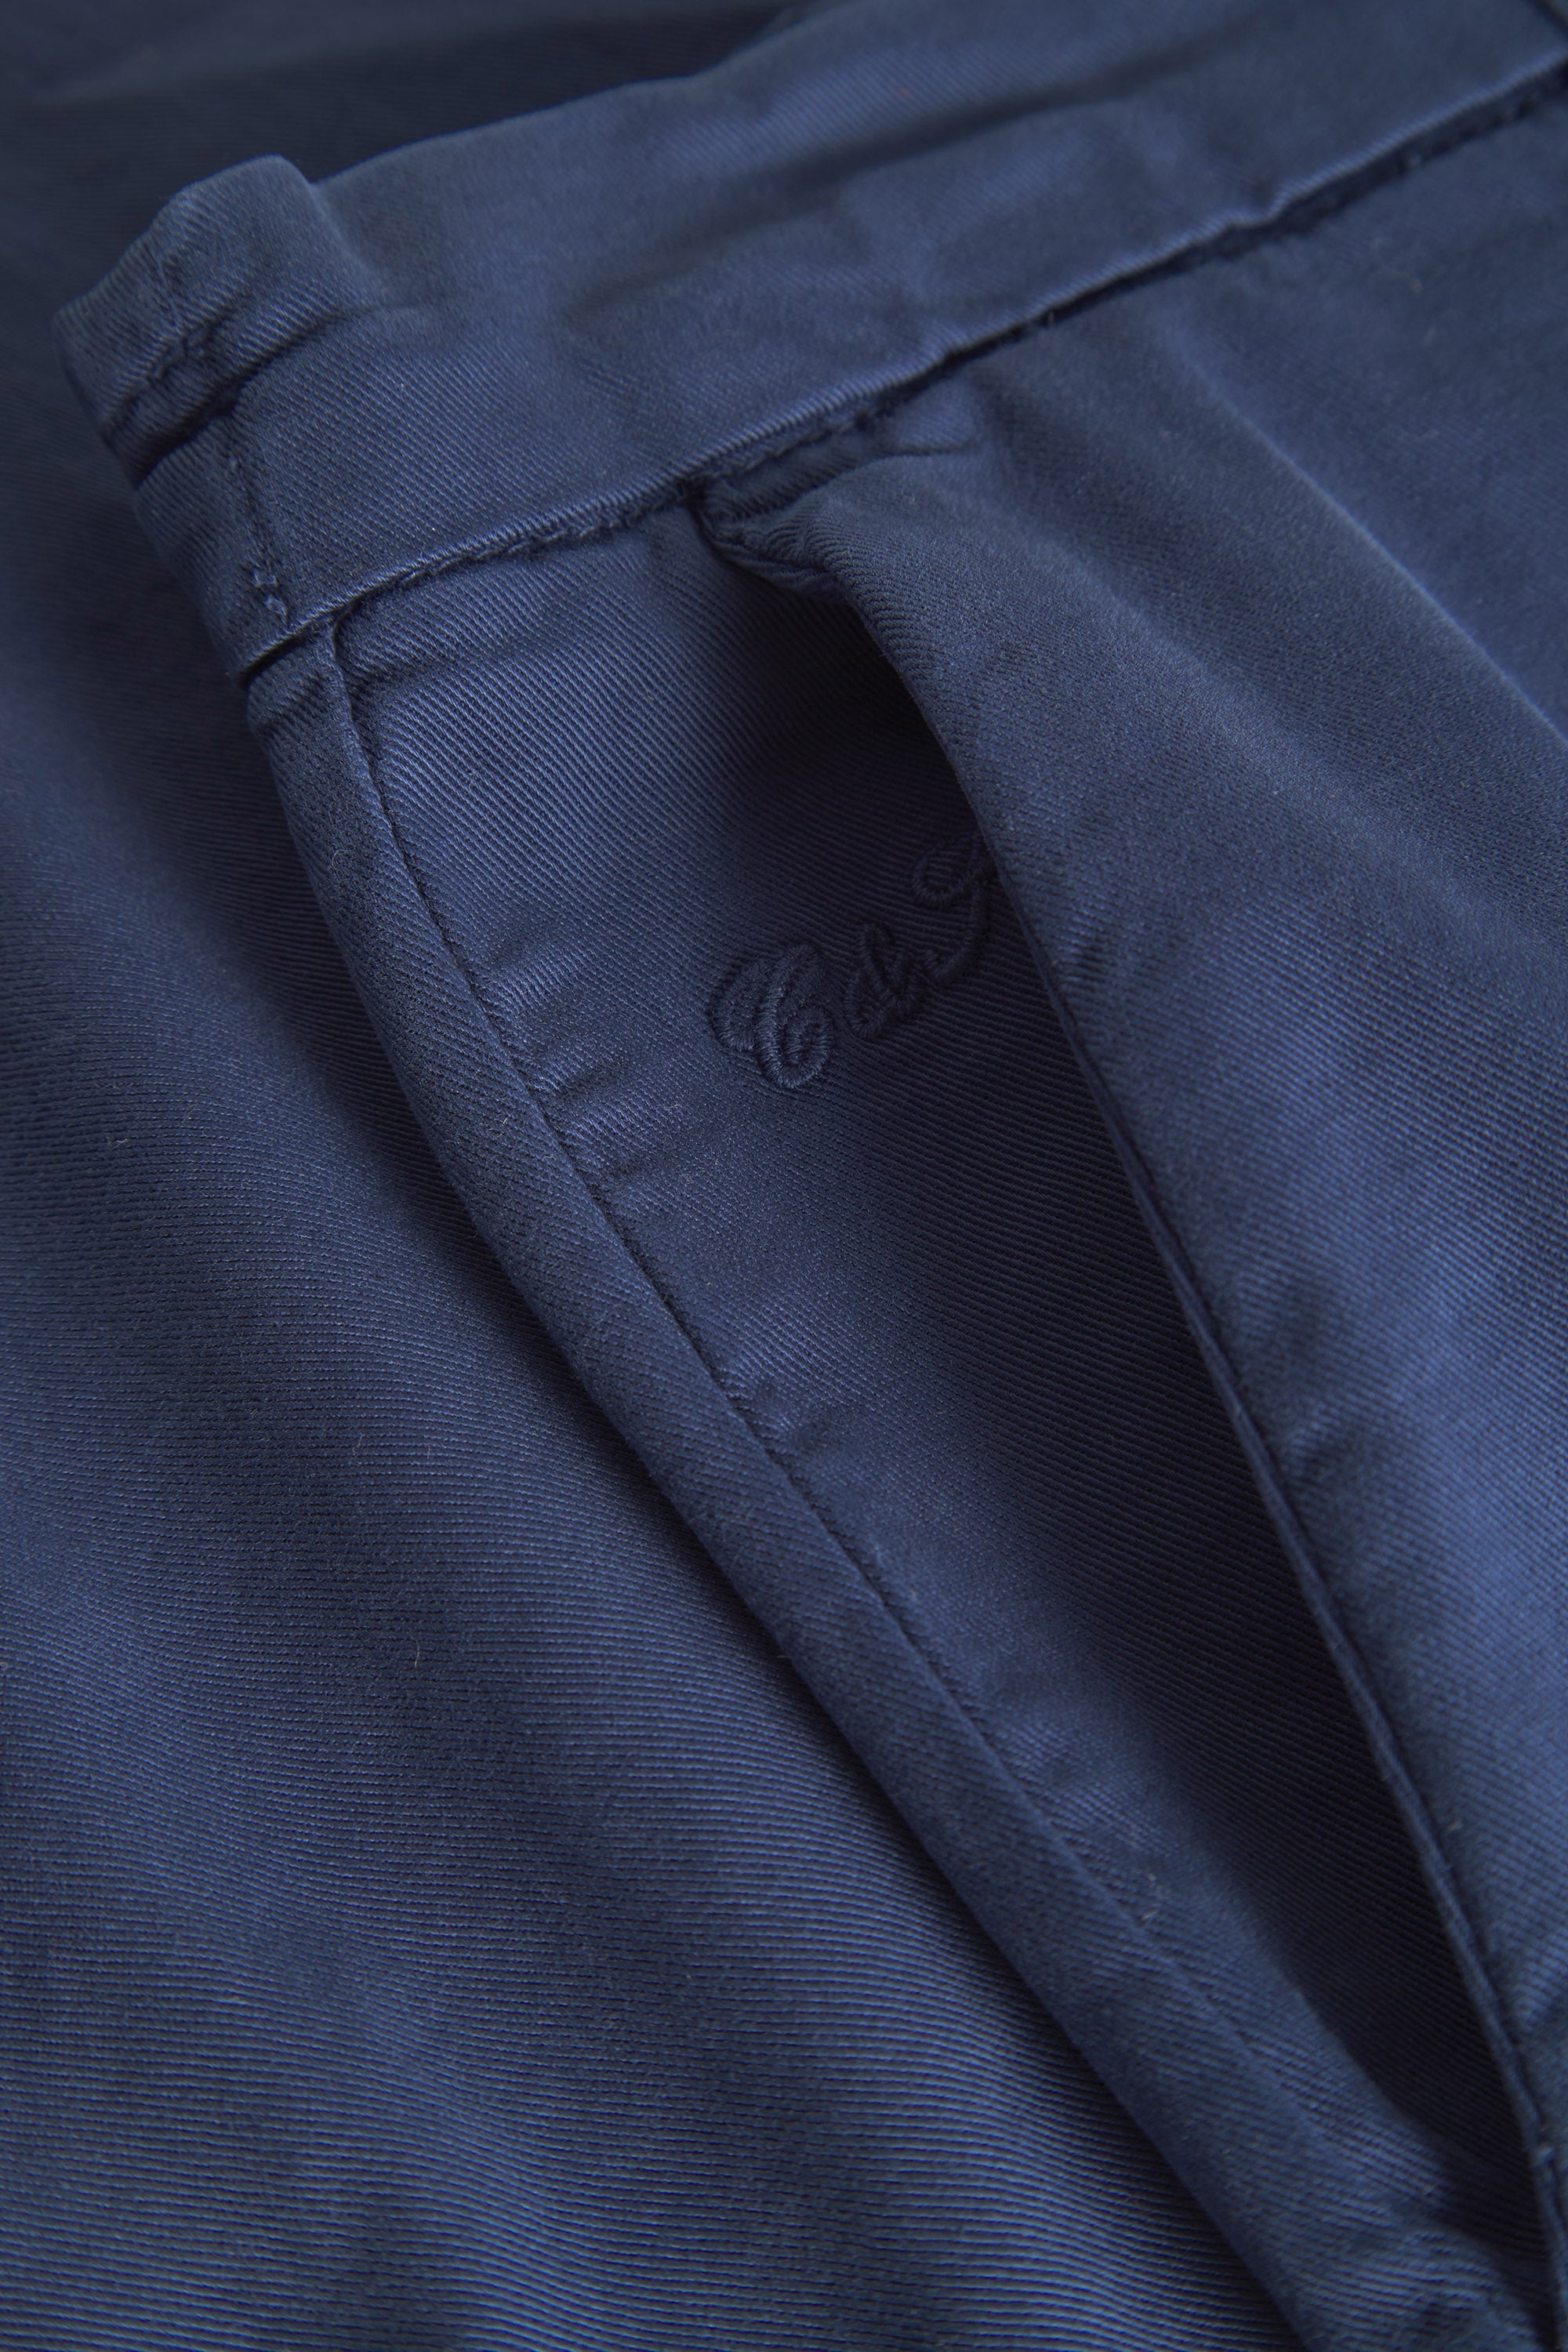 Herren Chino Basic in dunkelblau, 98% Baumwolle 2% Elastan von Colours & Sons 